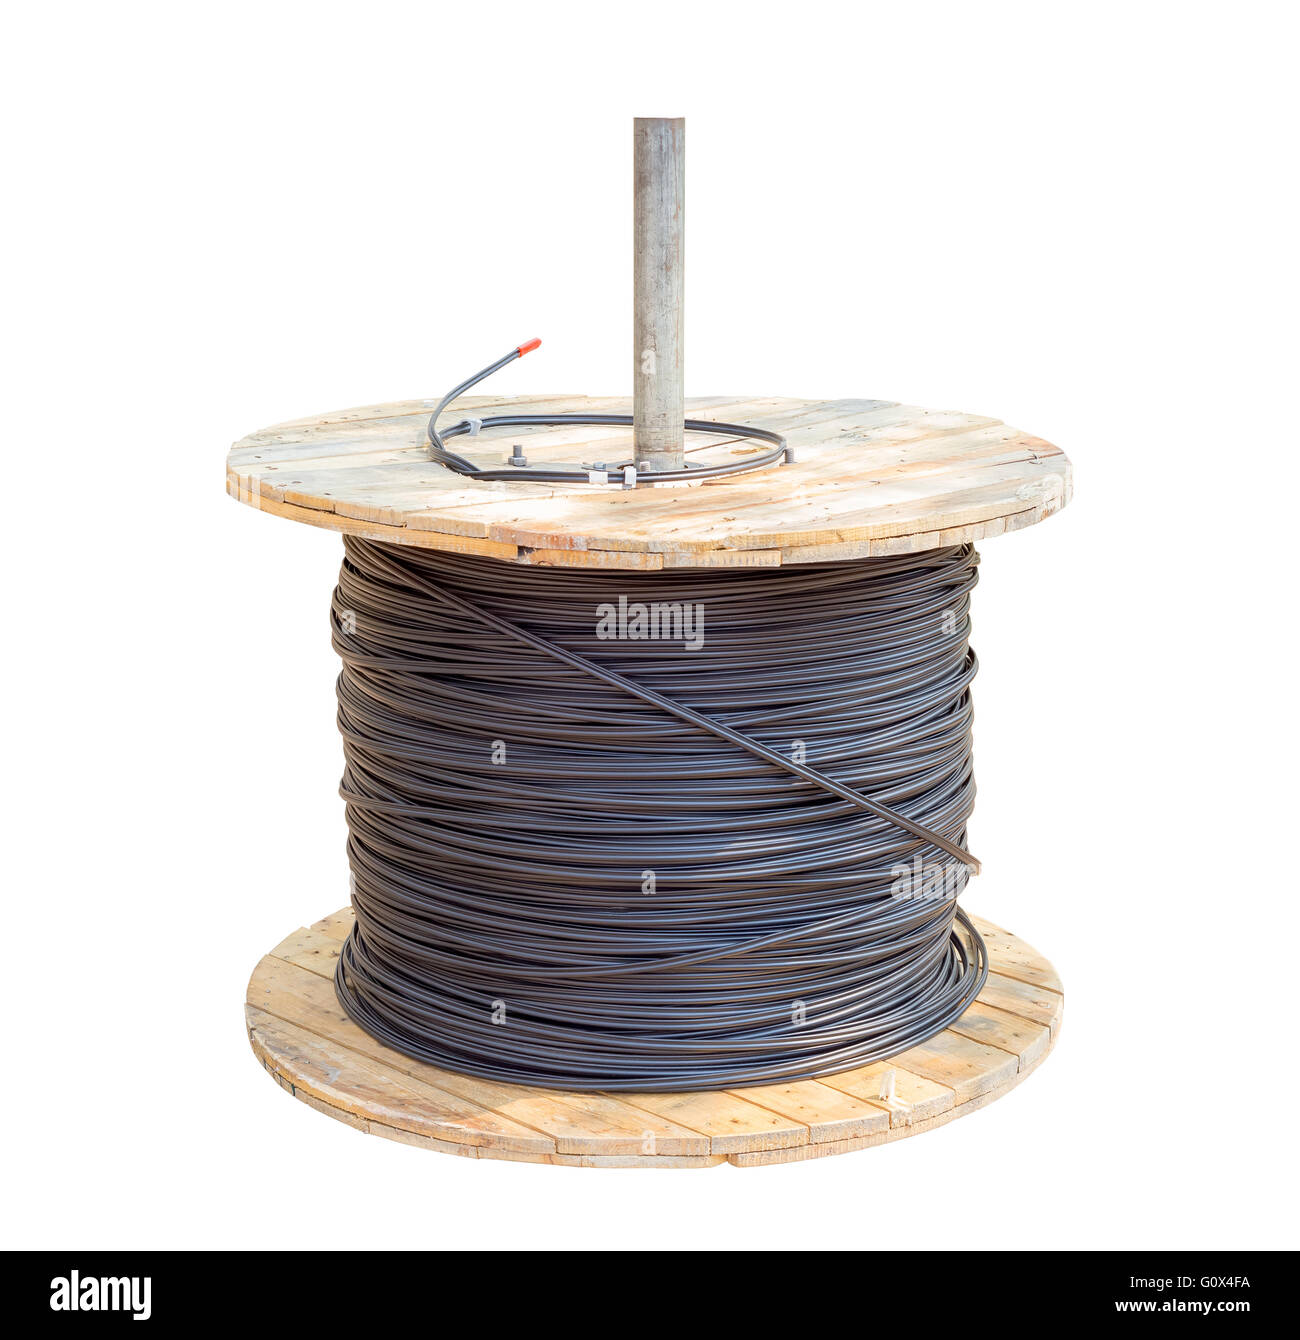 Des câbles électriques dans les fils noir rouleau bois isolé sur fond blanc avec clipping path Banque D'Images